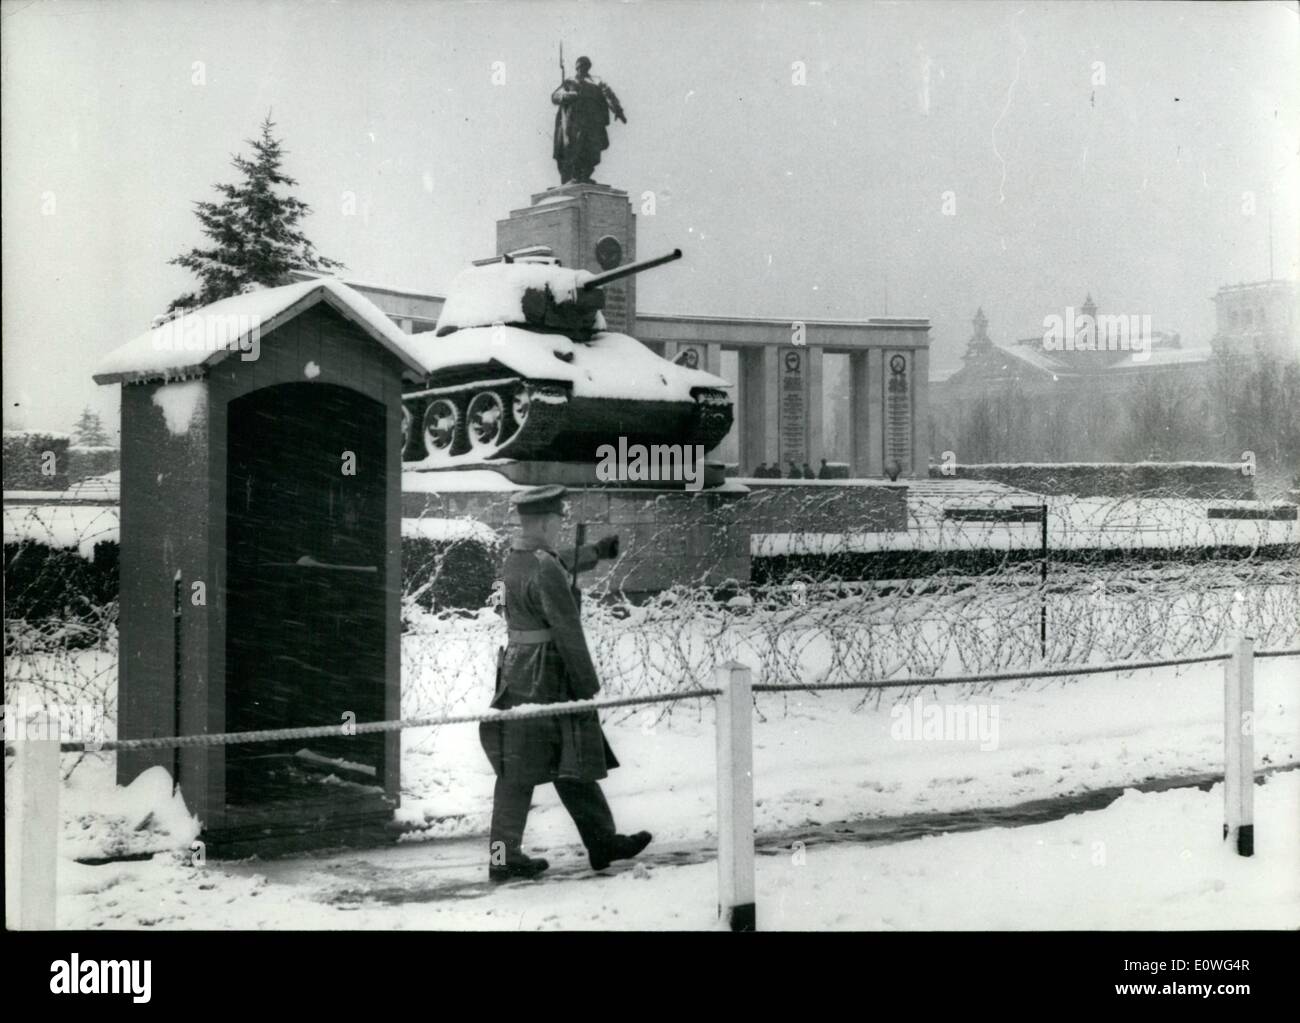 11. November 1962 - Schnee in Berlin: eine der größten fällt der Schnee Berlin seit November 1919 hat, traf dieser geteilten Stadt am Donnerstag, den 22. wenn zwischen 9 bis 8 Zoll Schnee fiel kontinuierlich für 40 Stunden. Das Foto zeigt ein britischer Soldat auf Wache am russischen Kriegerdenkmal in West-Berlin. Stockfoto